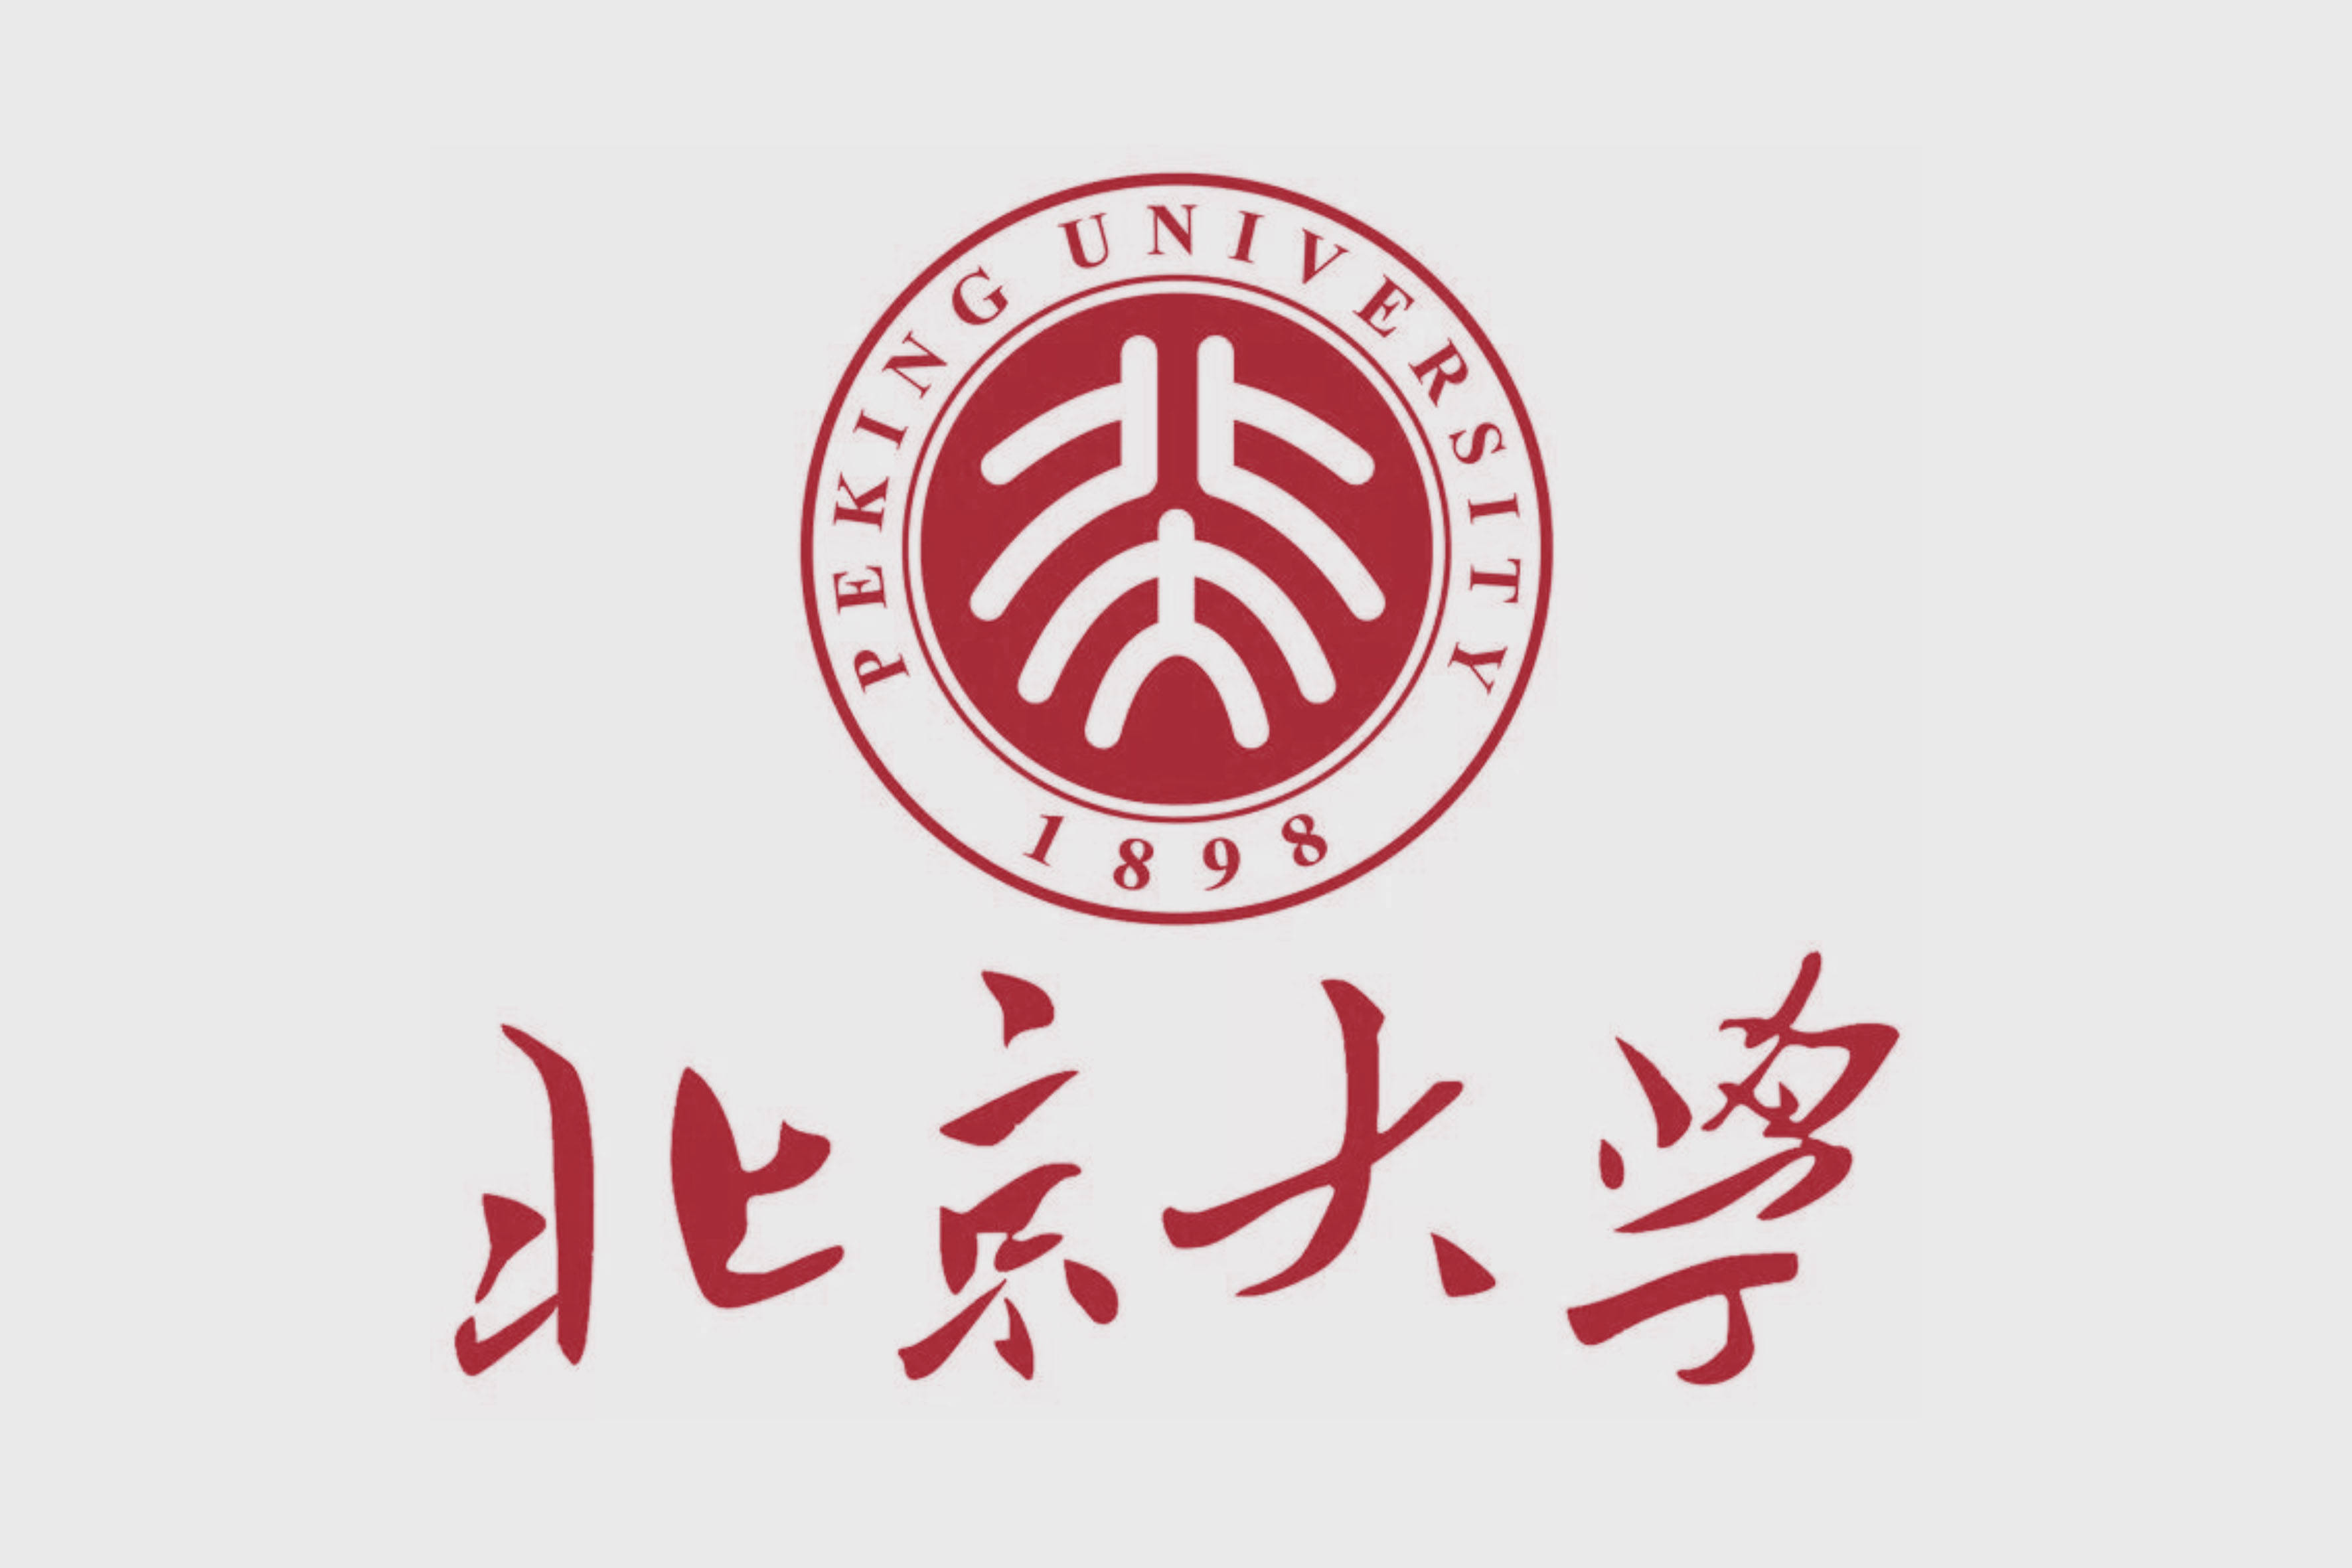 鲁迅设计的北大校徽logo鲁迅设计的十二章国徽鲁迅手写体厦门大学以下